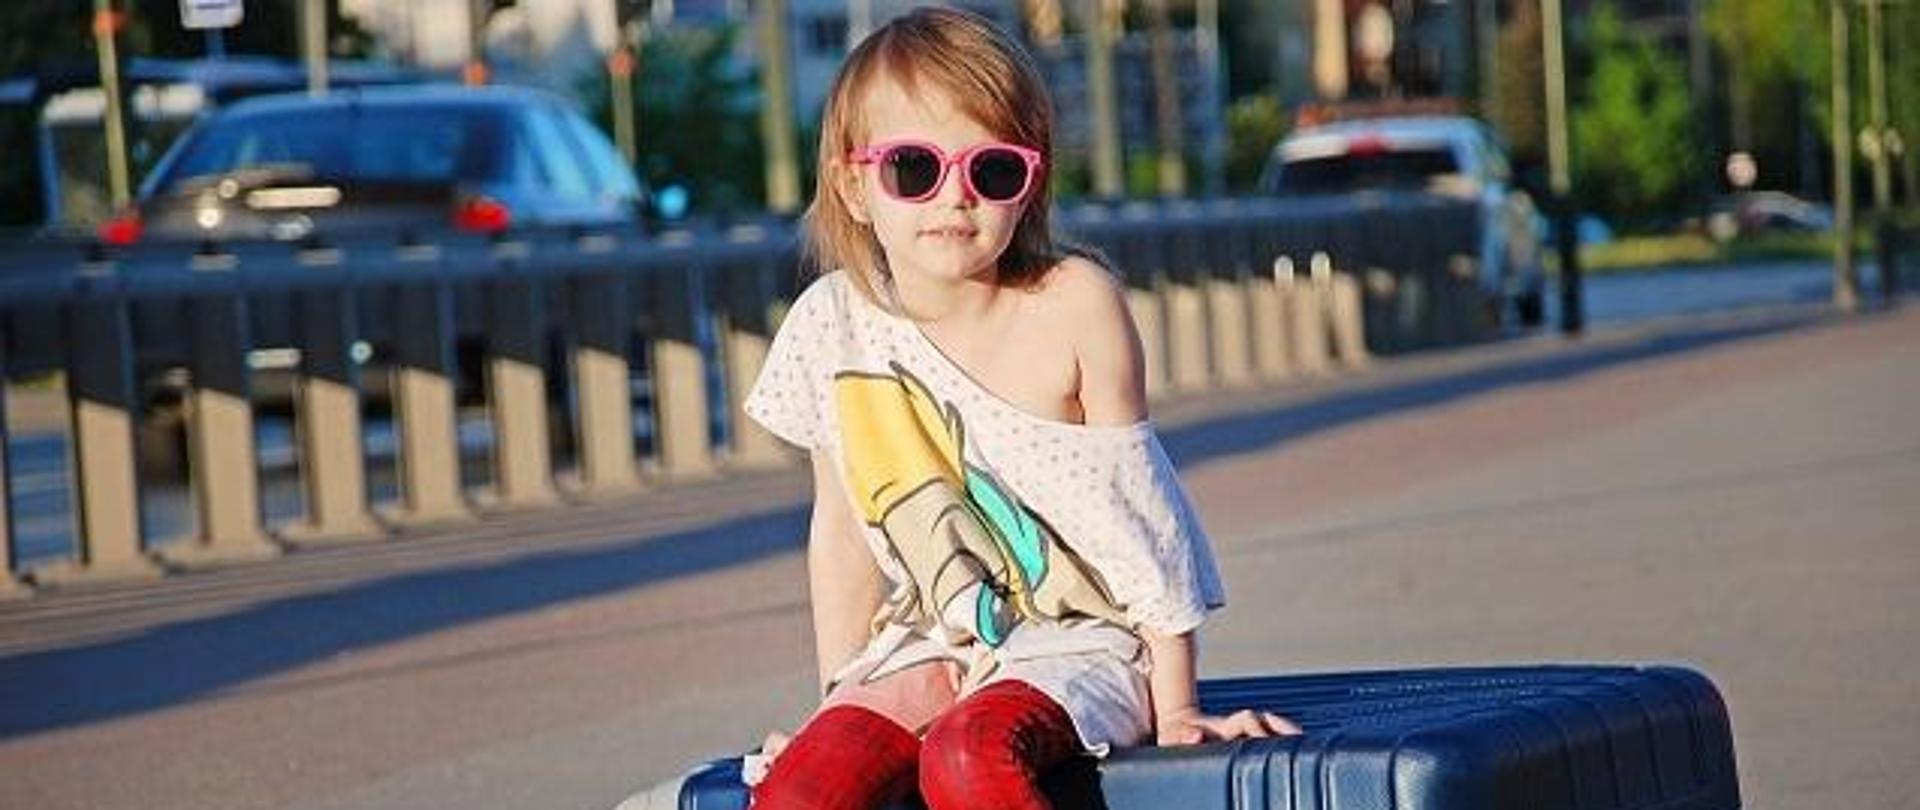 dziewczynka w okularach słonecznych siedząca na walizce na chodniku